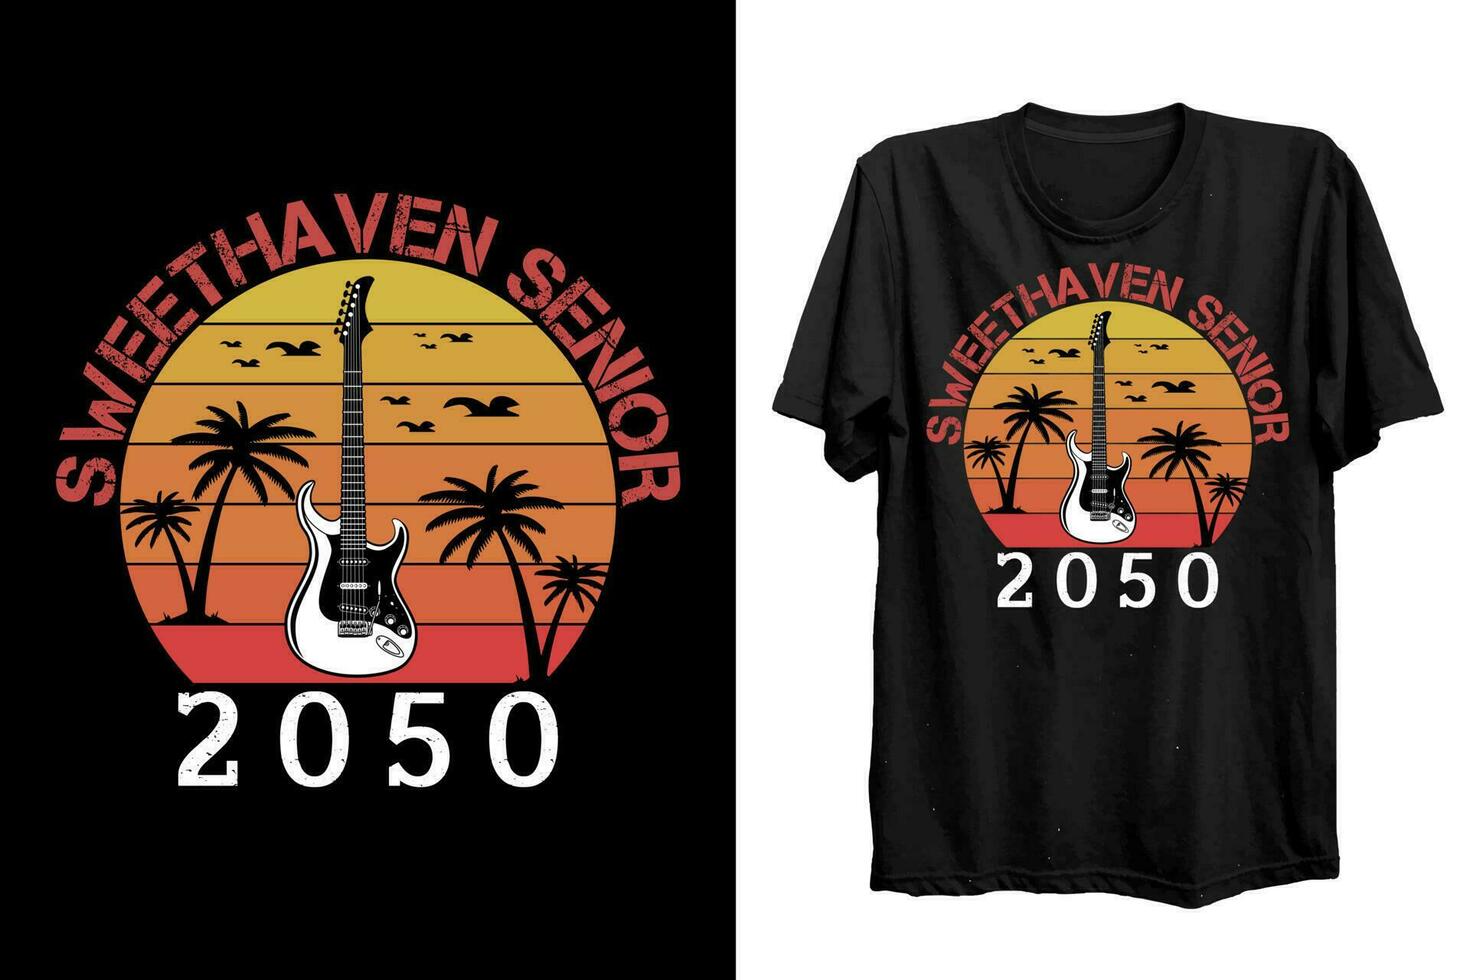 Sweethaven Senior 2050 t shirt design. Summer T shirt design vector for t shirt lover